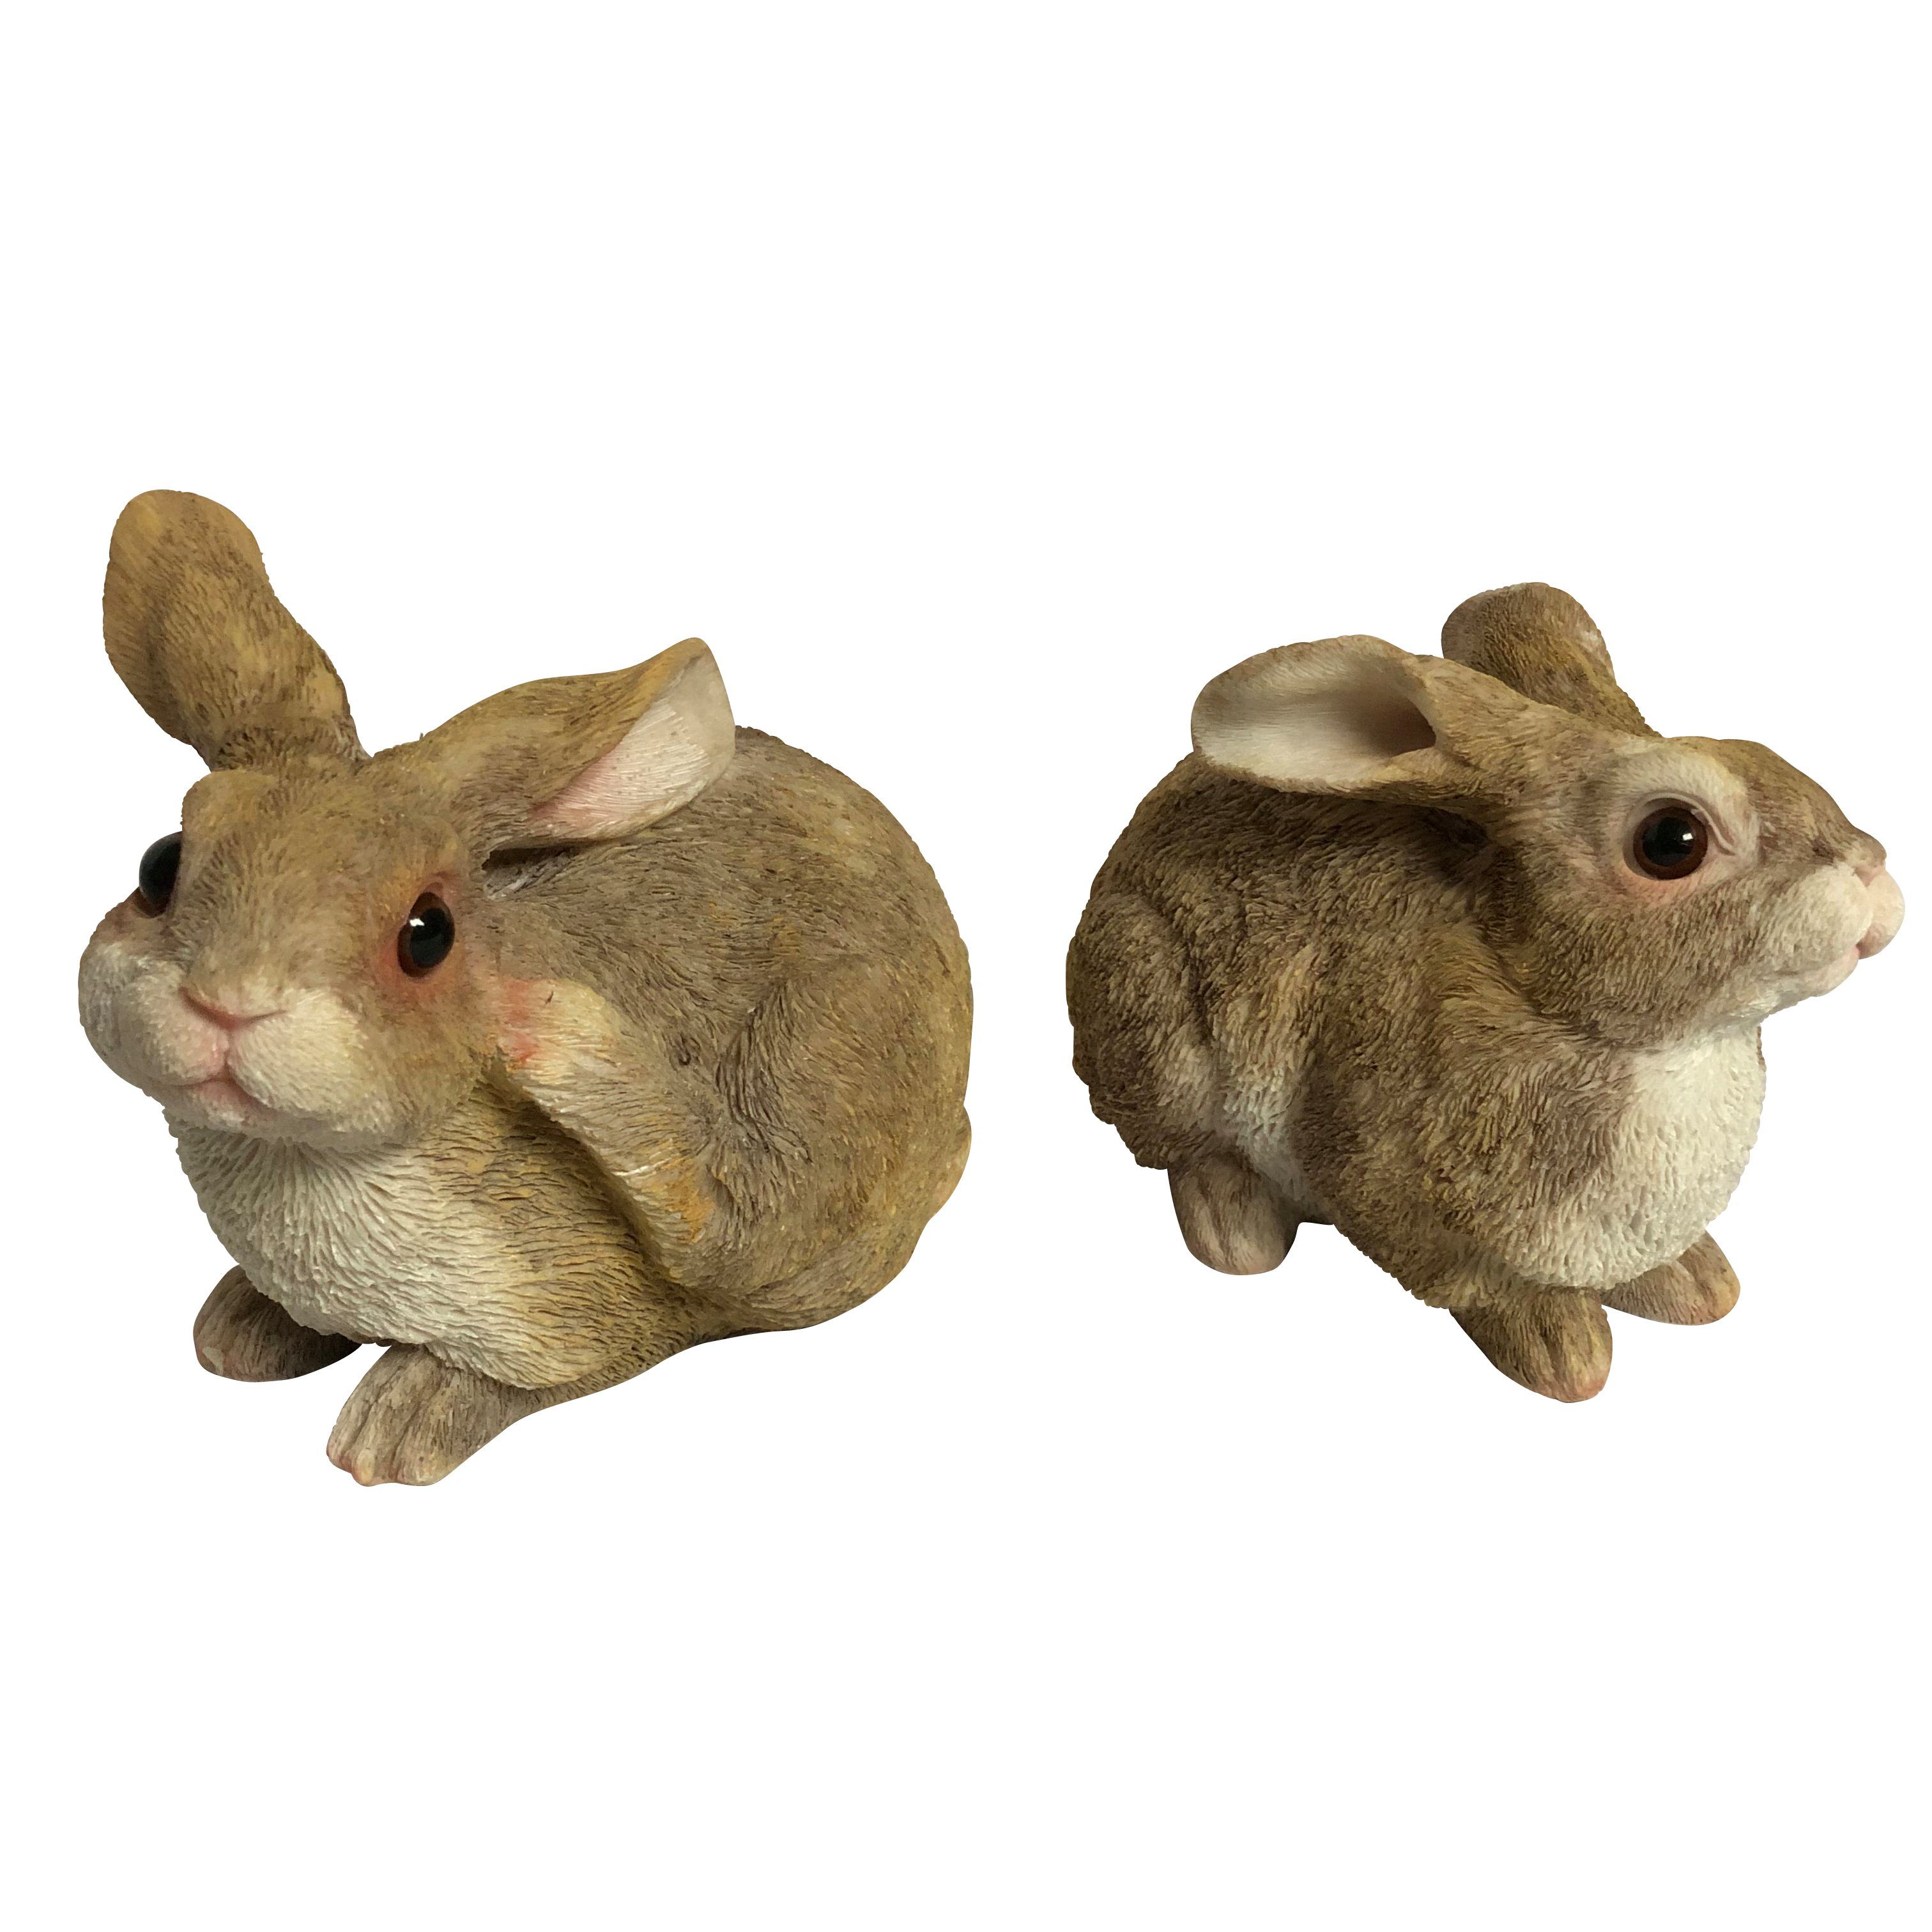 Online-Fuchs Gartenfigur Niedliche Deko Hasen, Kaninchen - Gartenfiguren Tiere Hase groß, Für außen geeignet